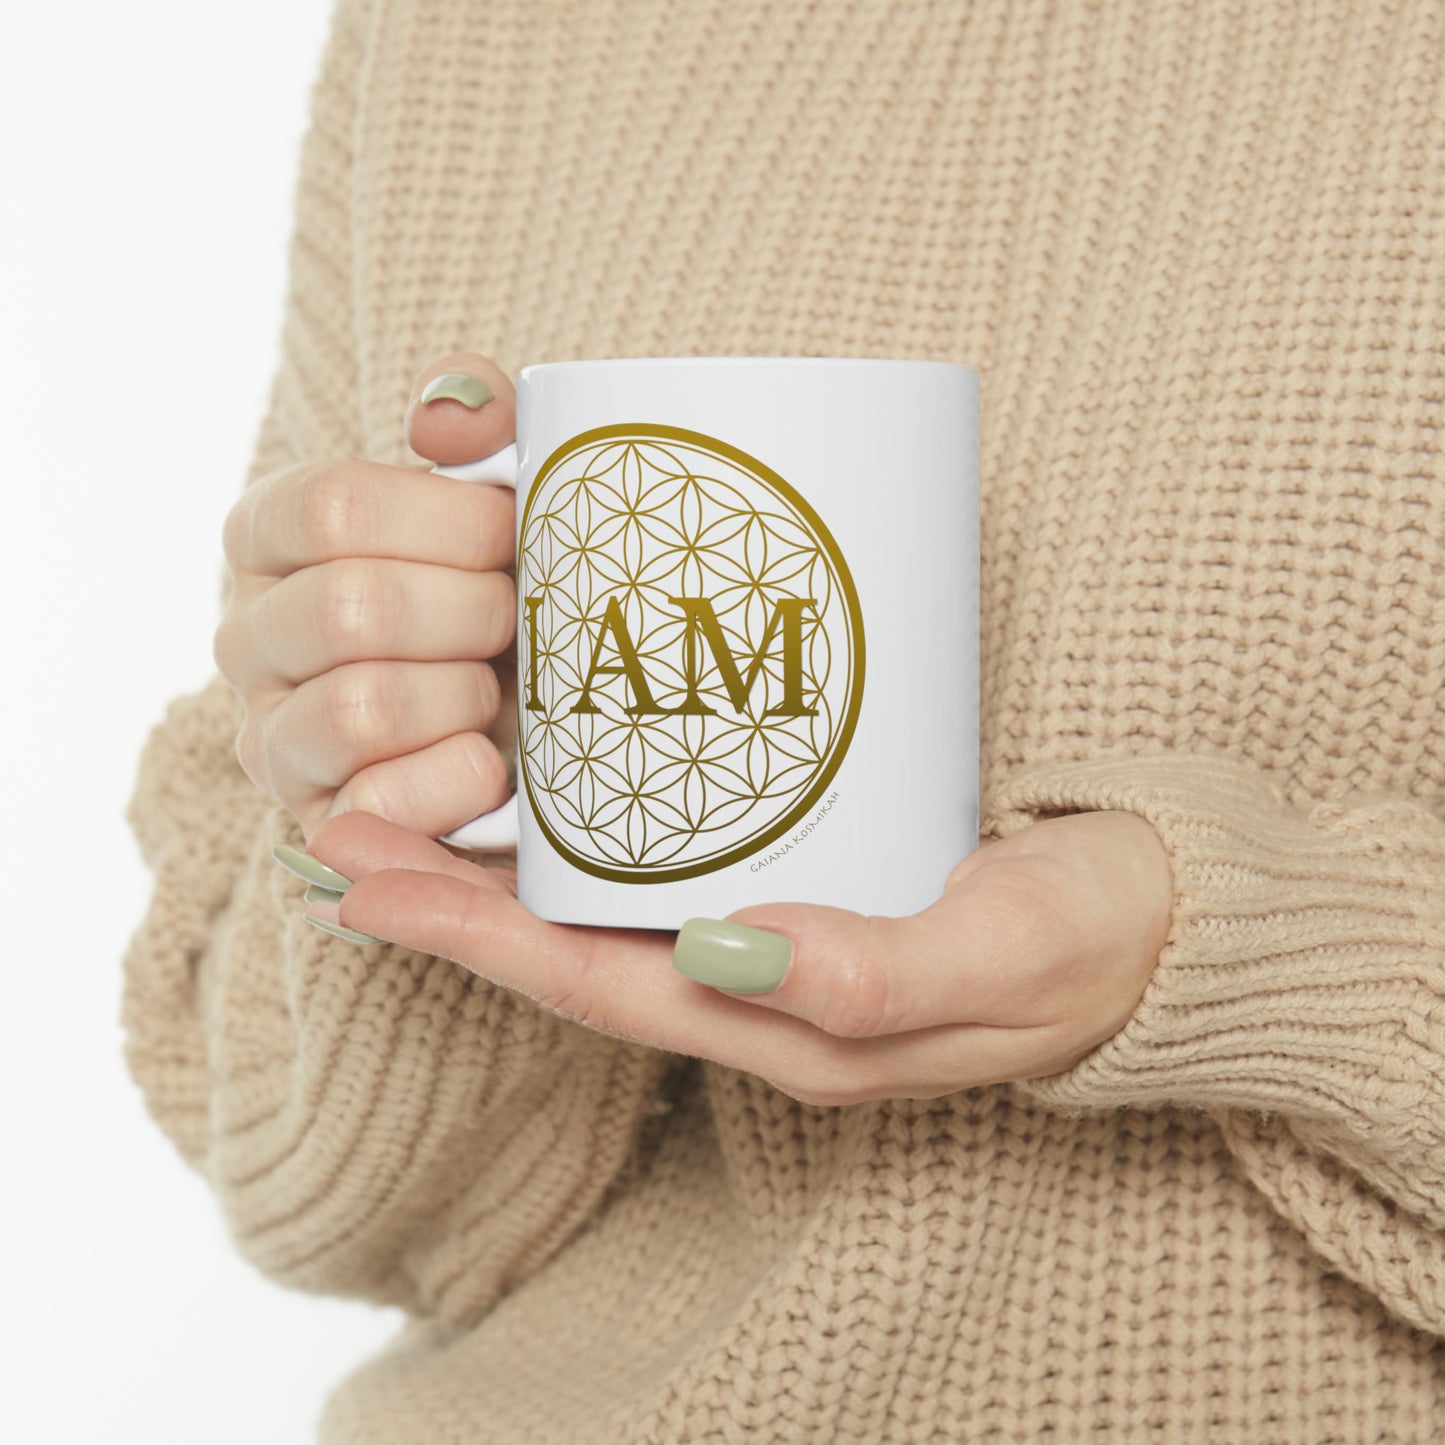 I Am & Flower of Life - Ceramic Mug 11oz